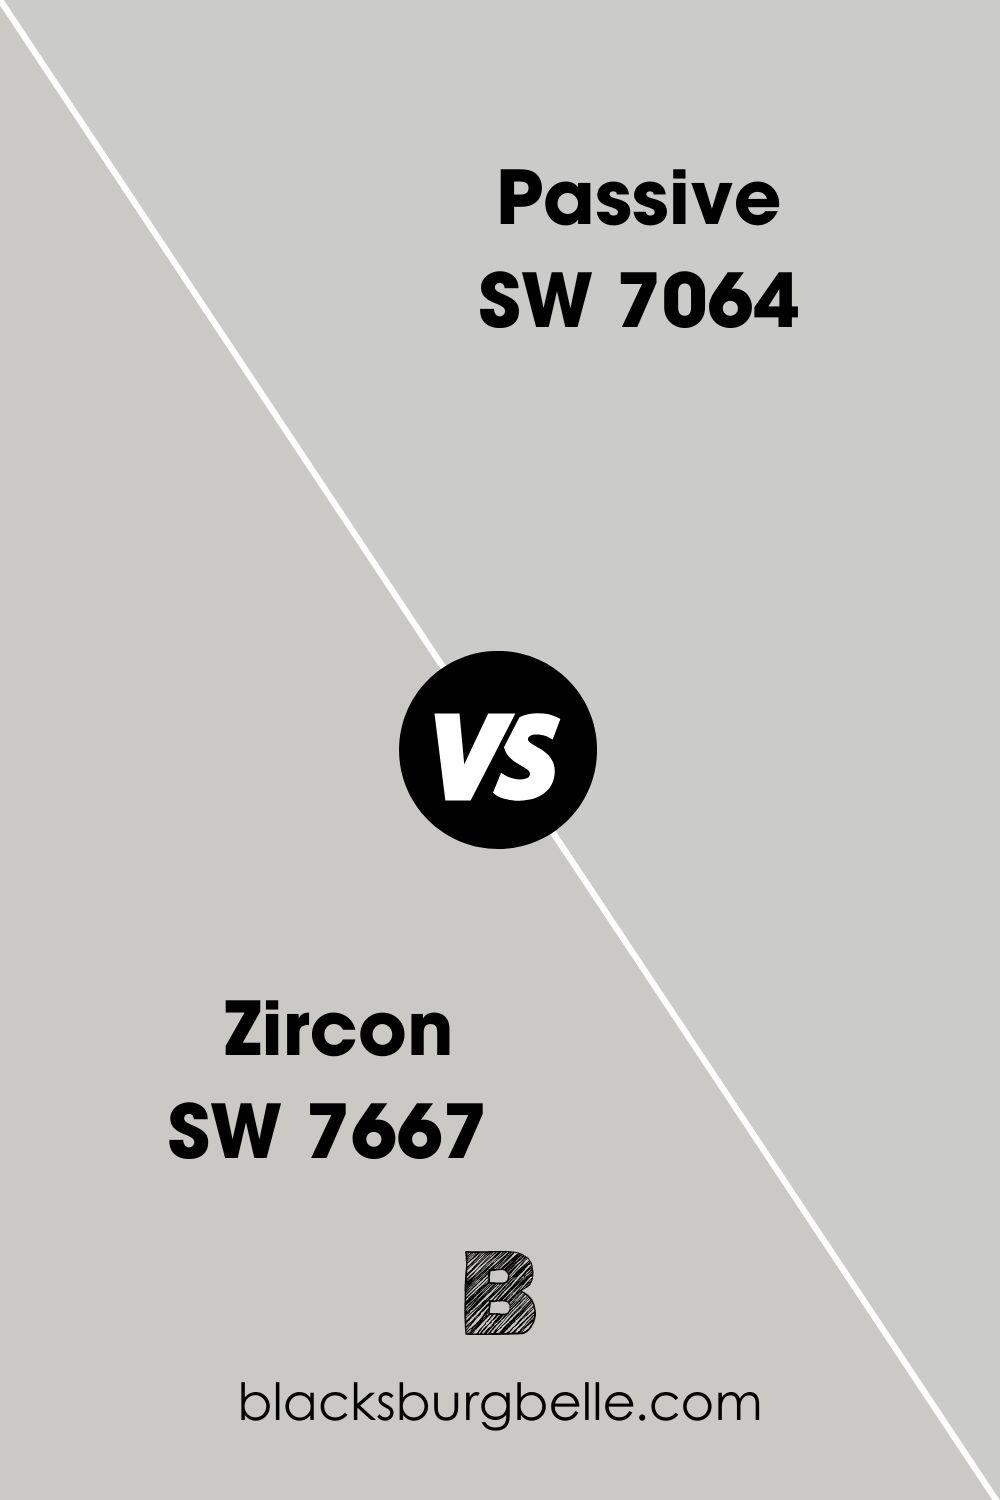 Zircon SW 7667